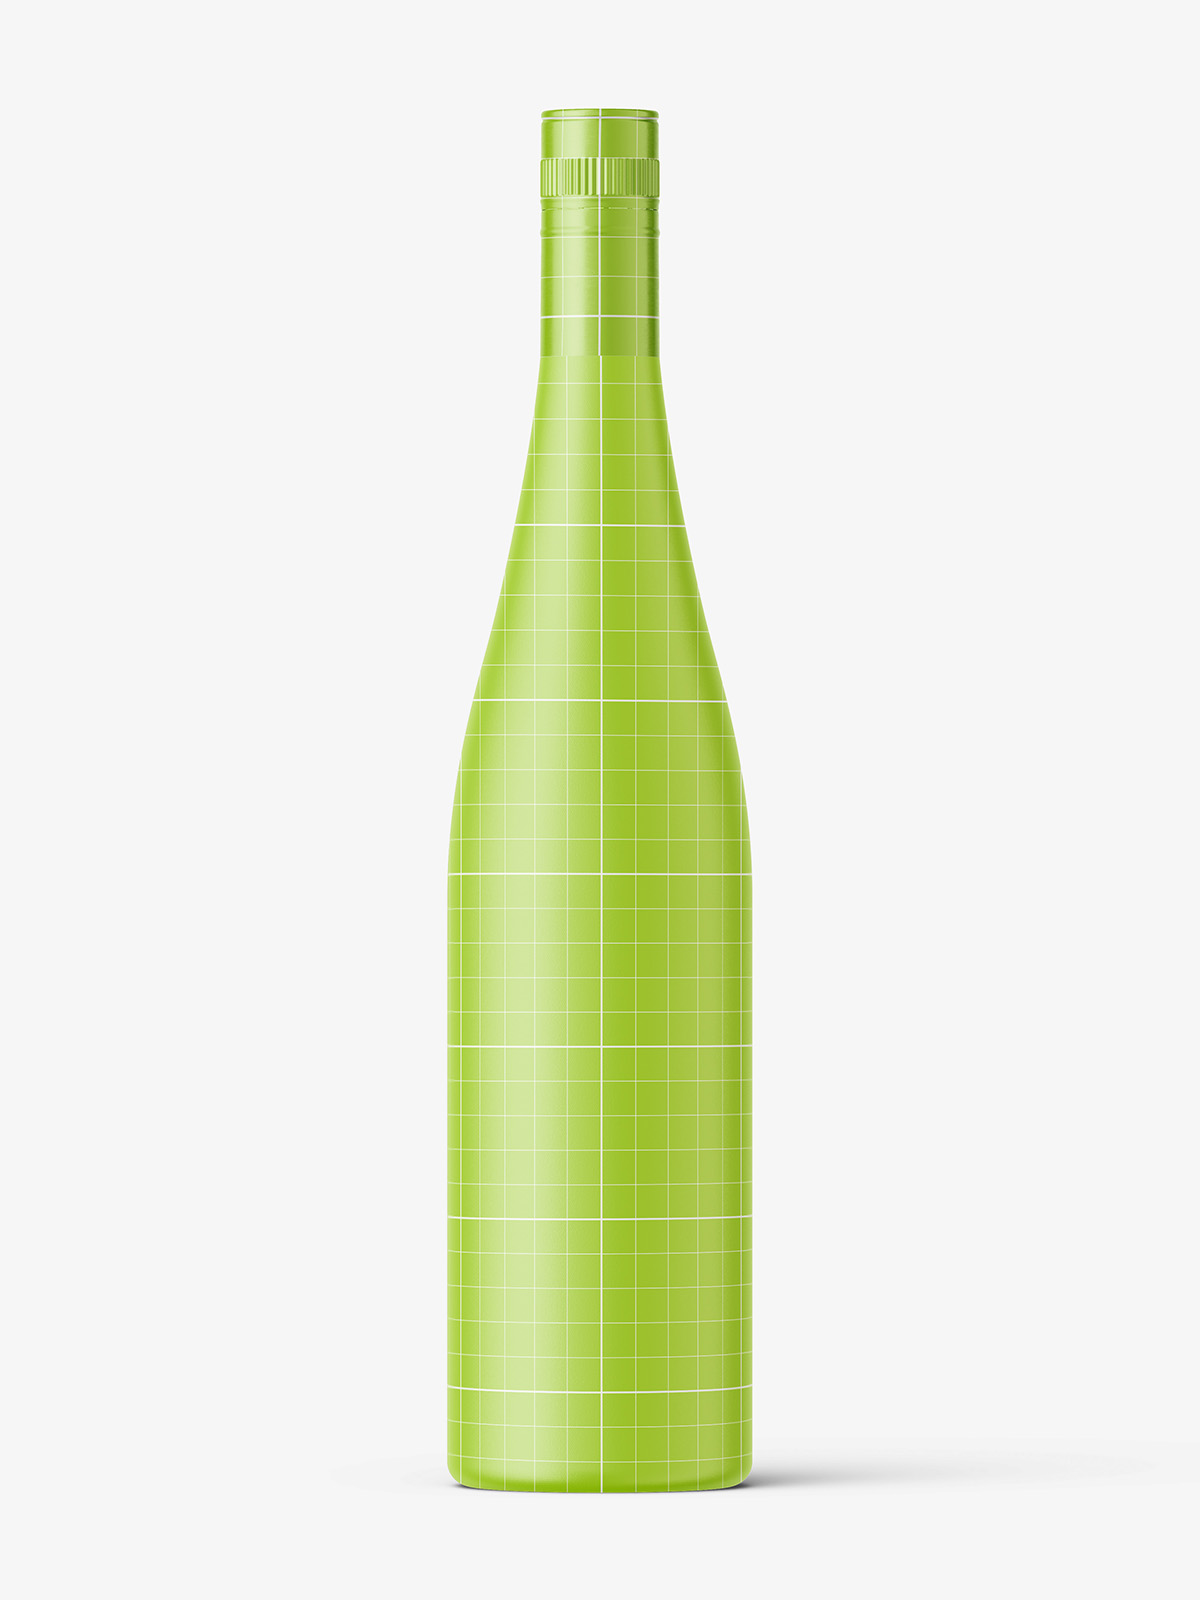 Download Rose Wine Bottle Mockup Smarty Mockups PSD Mockup Templates